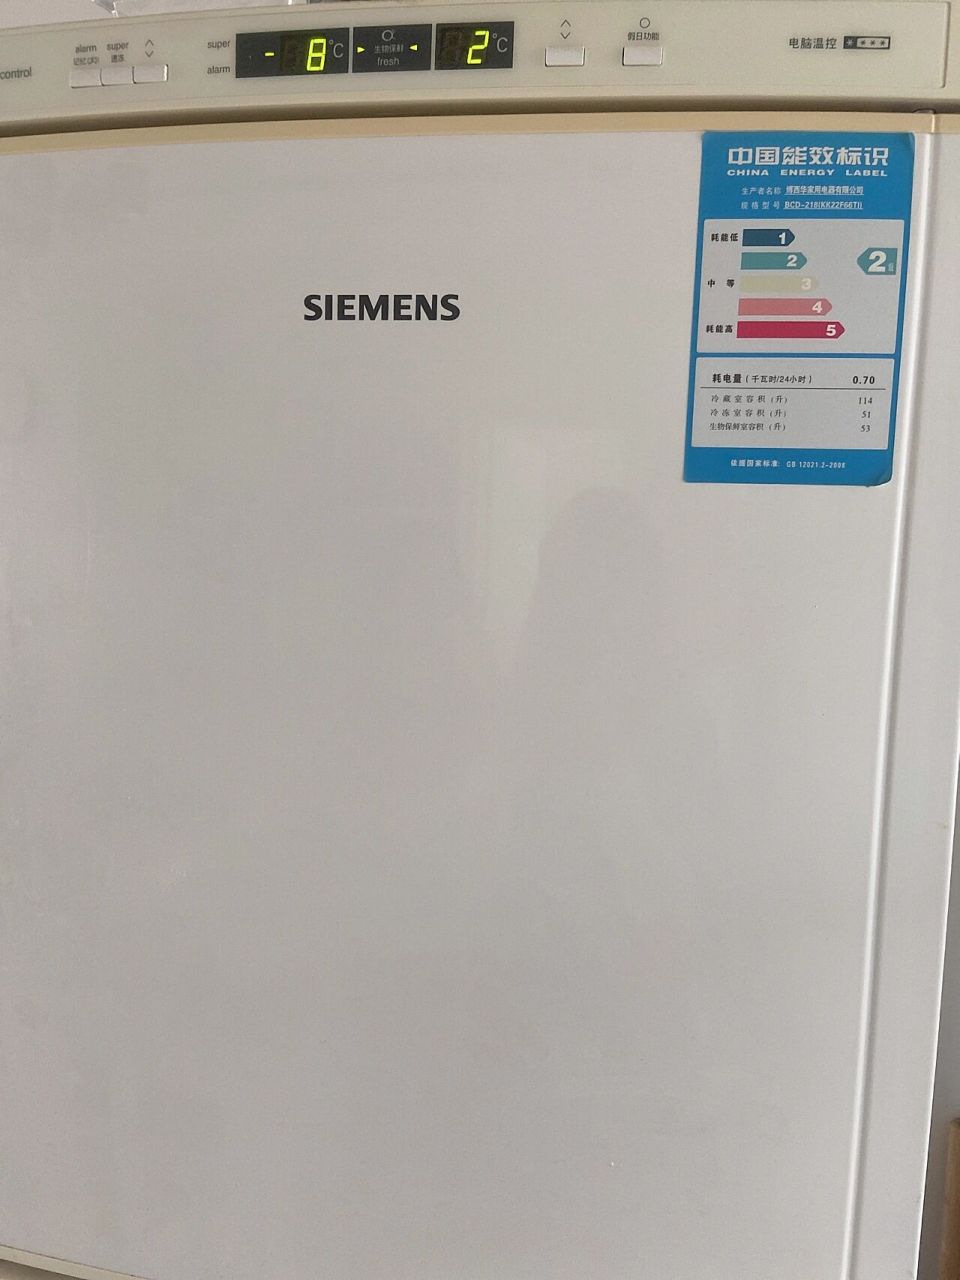 西门子老式冰箱调温图片